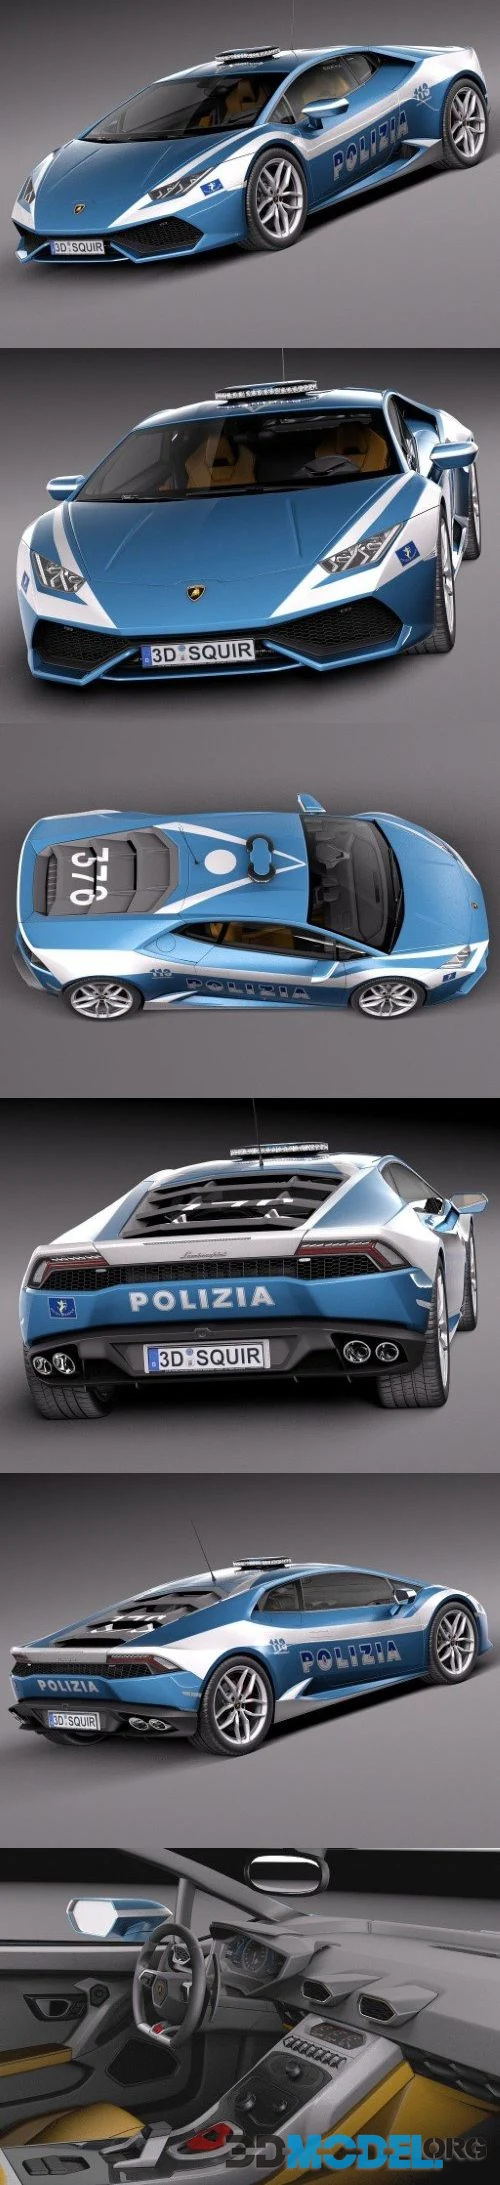 Lamborghini Huracan 2015 Italian Police Car car